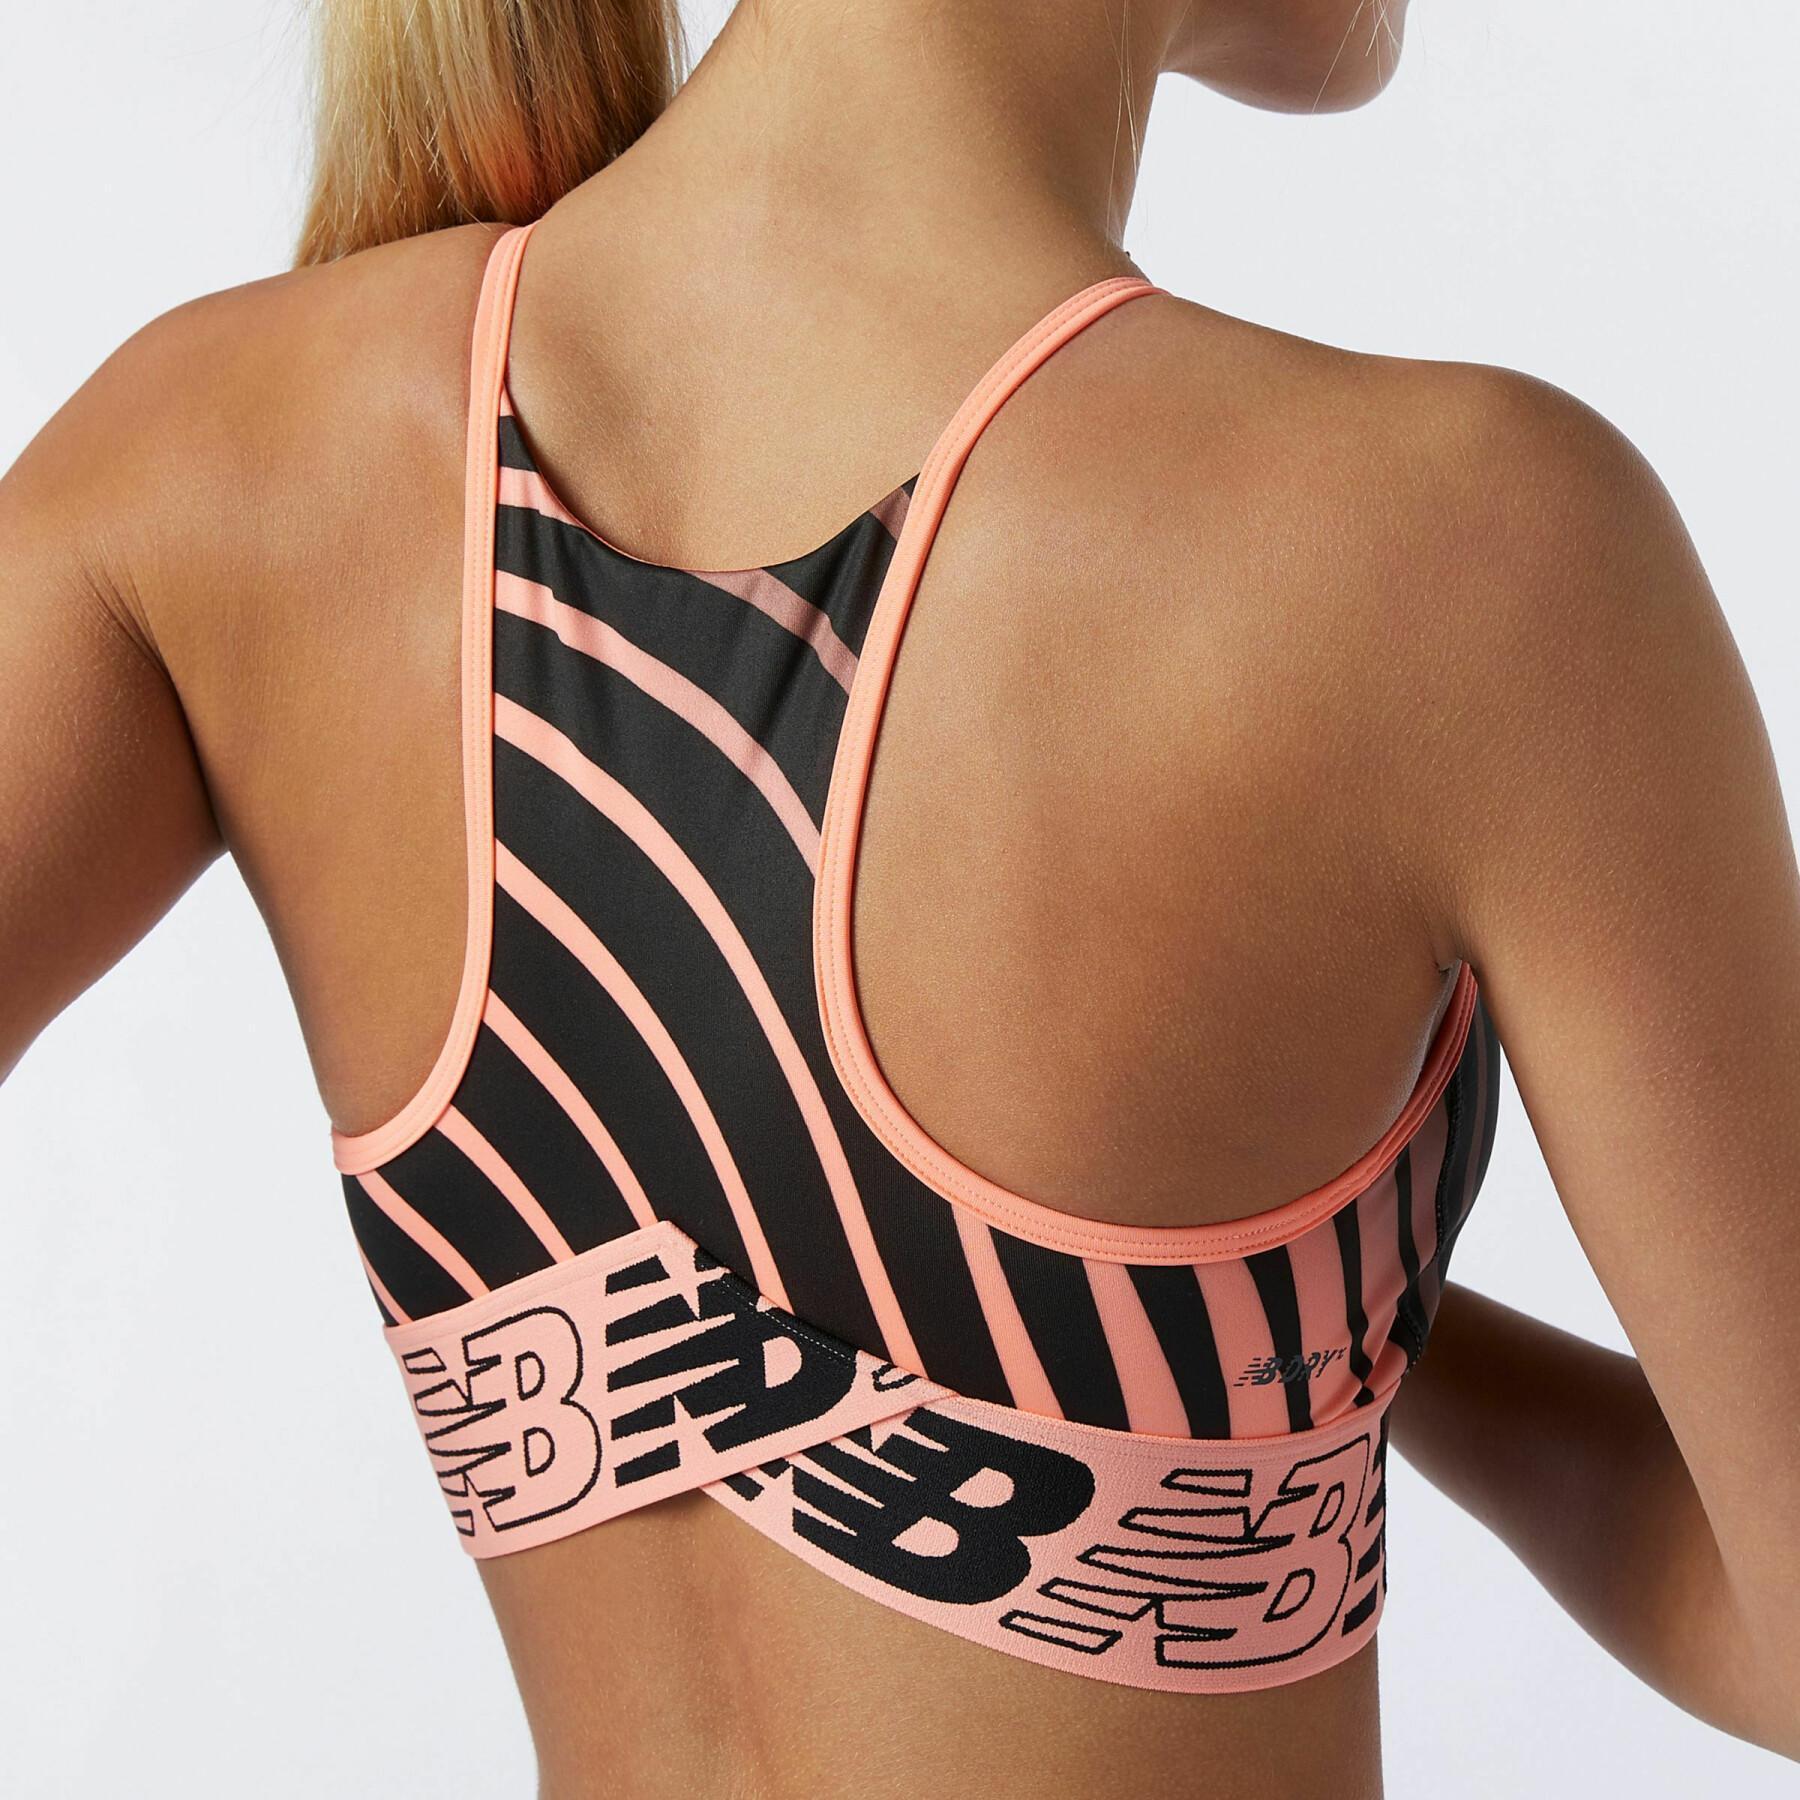 Women's crop top swimsuit New Balance relentless printed